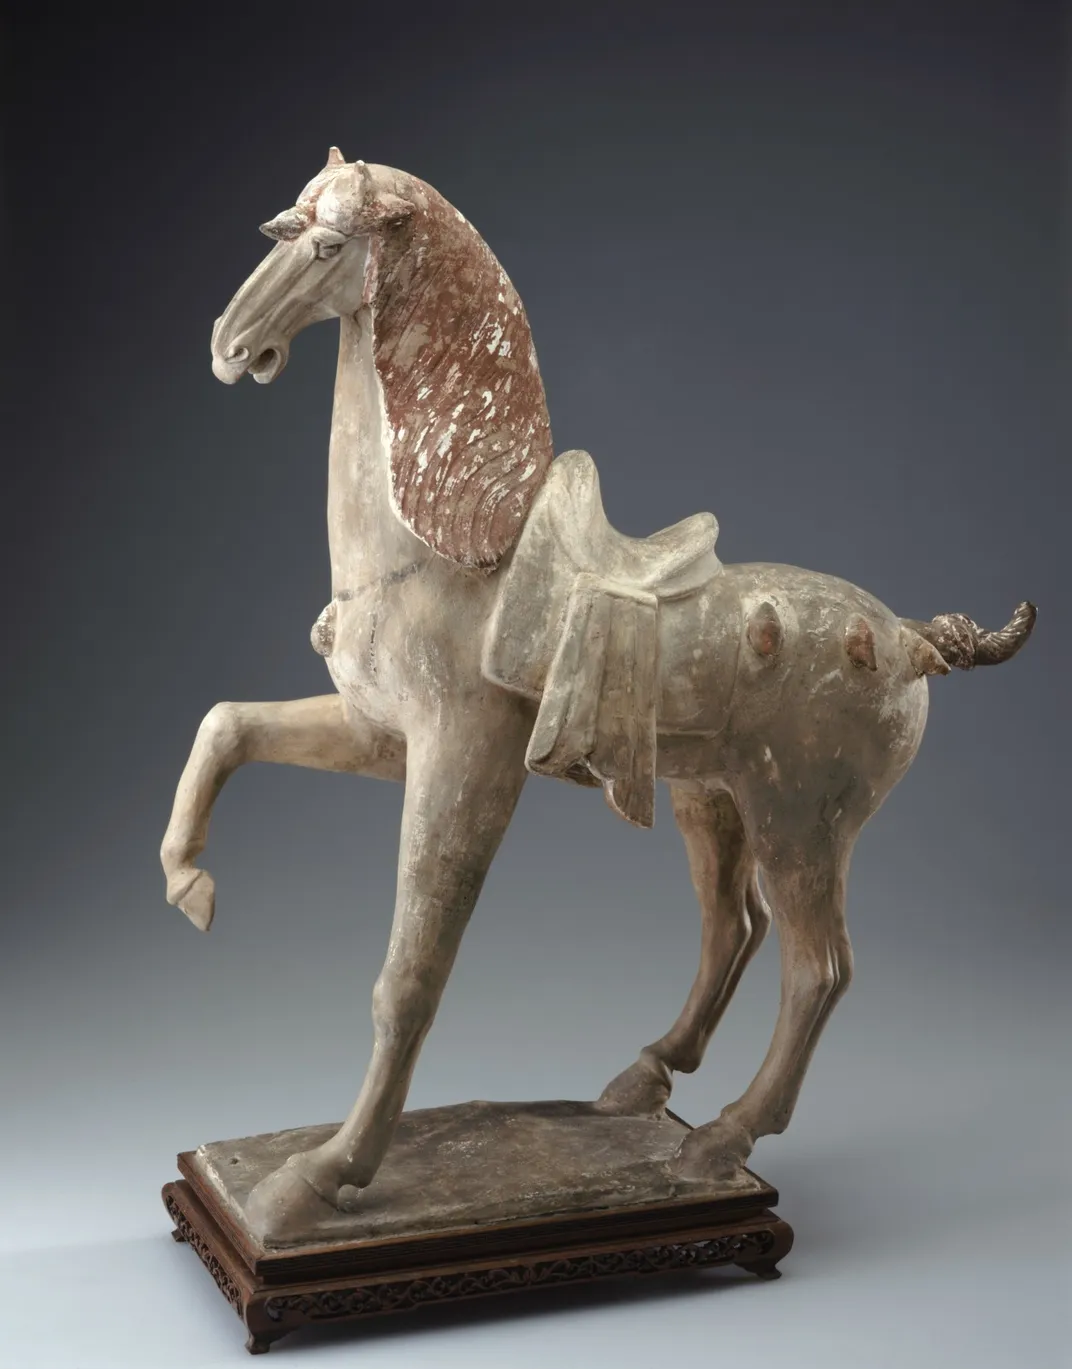 Escultura em barro de um cavalo com uma pata no ar e borlas decorativas no corpo e uma na testa.